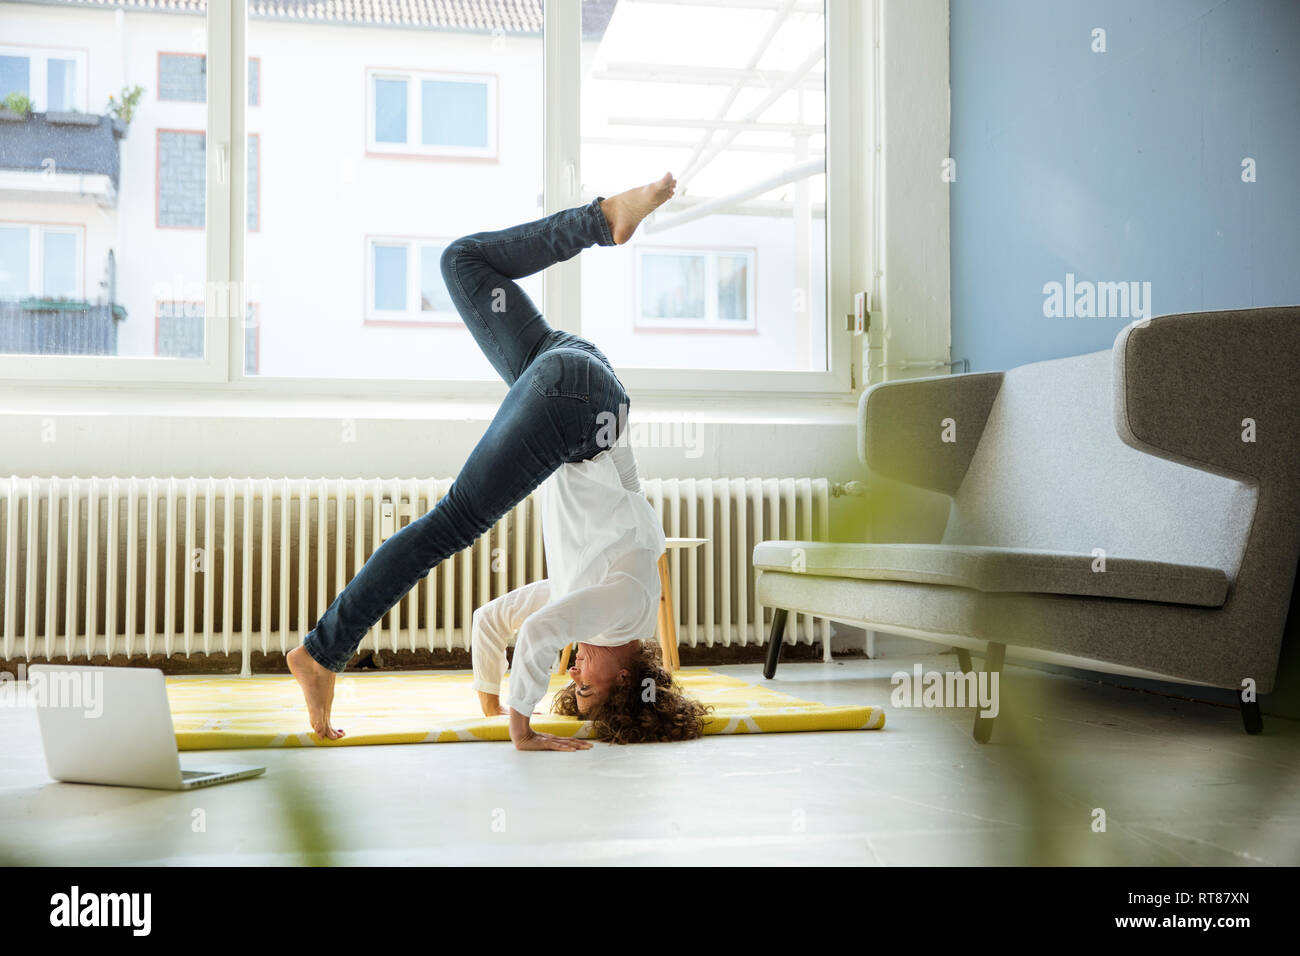 Businesswoman practising yoga on the floor Stock Photo